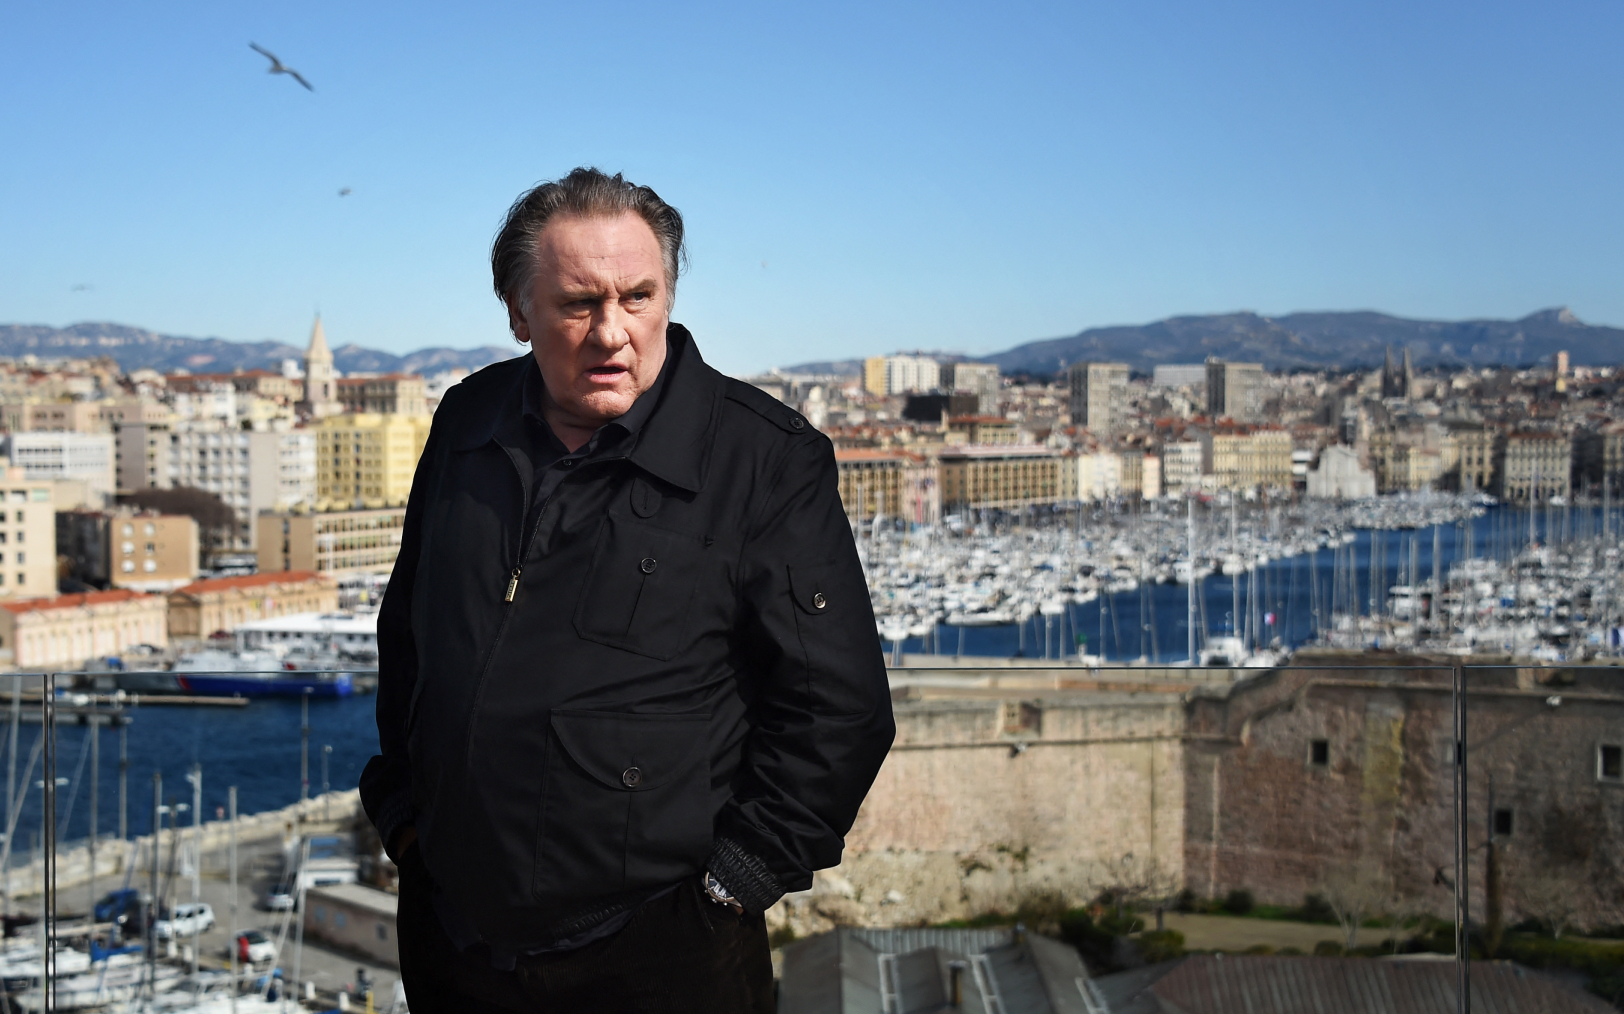 Gérard Depardieu sur le tournage de la série « Marseille », le 18 février 2018. AFP/Anne-Christine Poujoulat